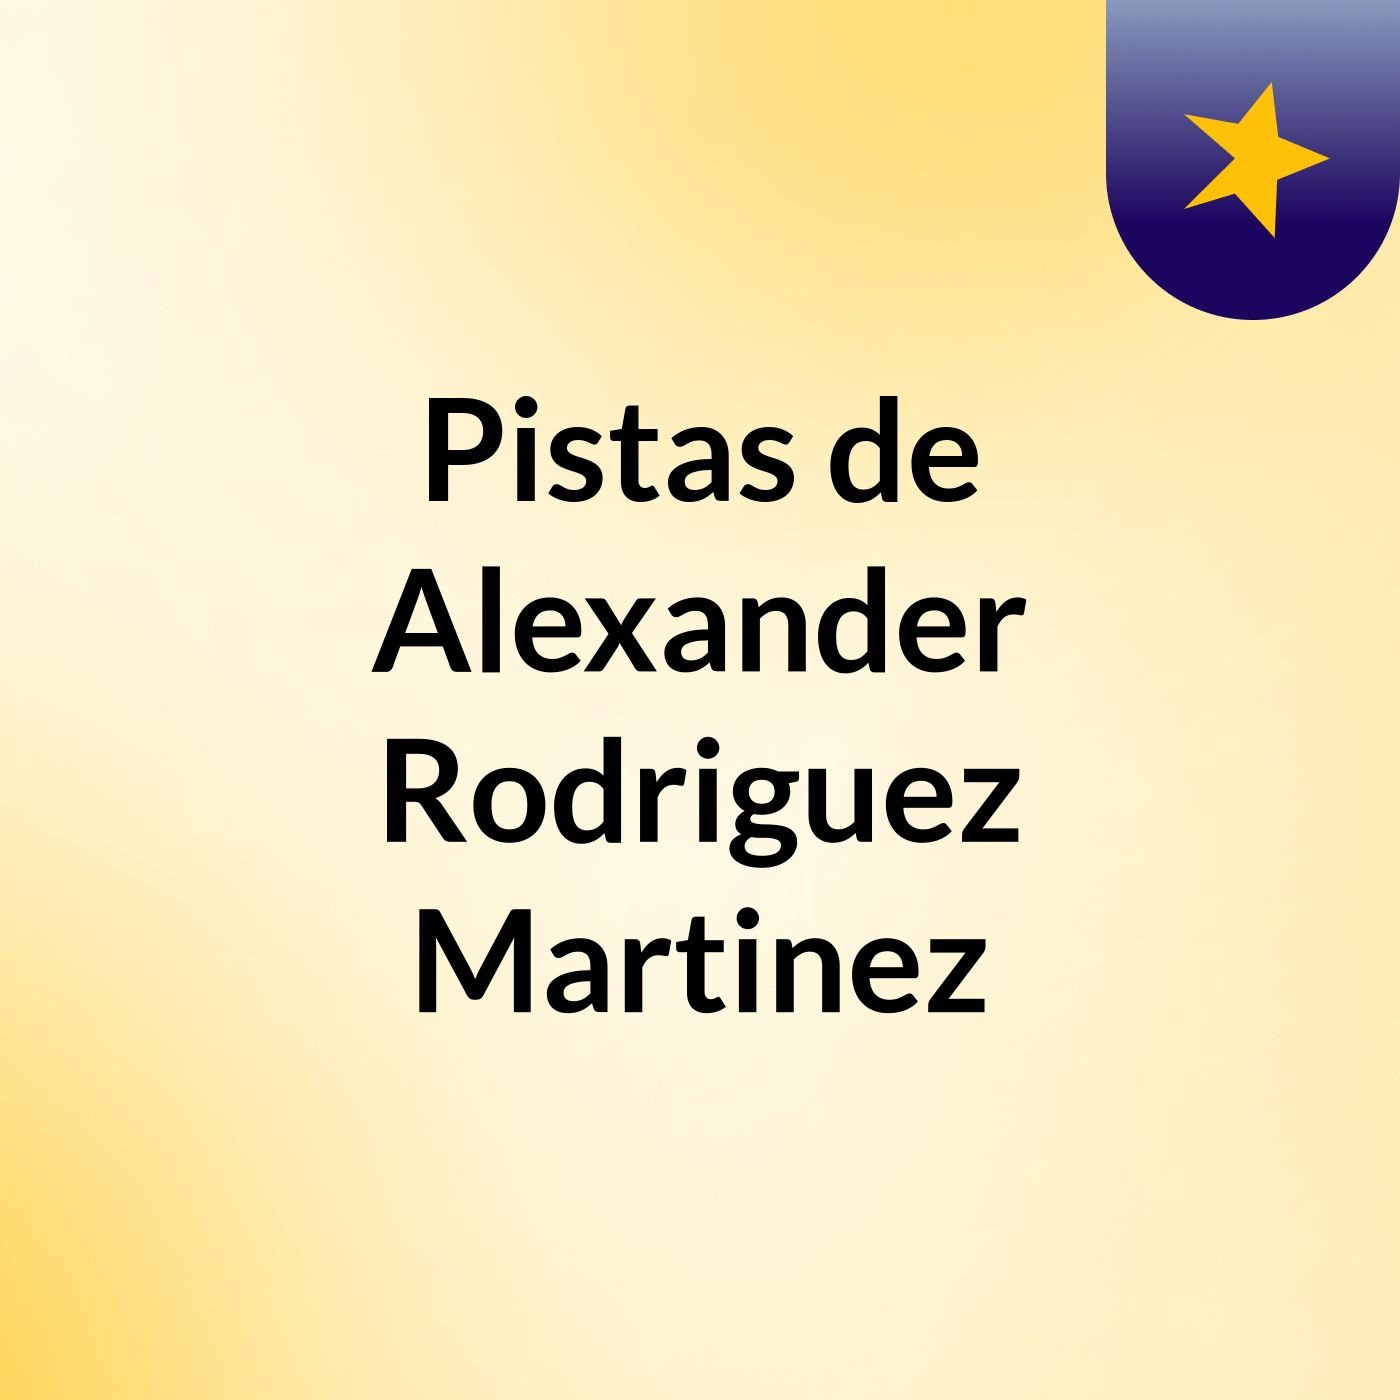 Pistas de Alexander Rodriguez Martinez